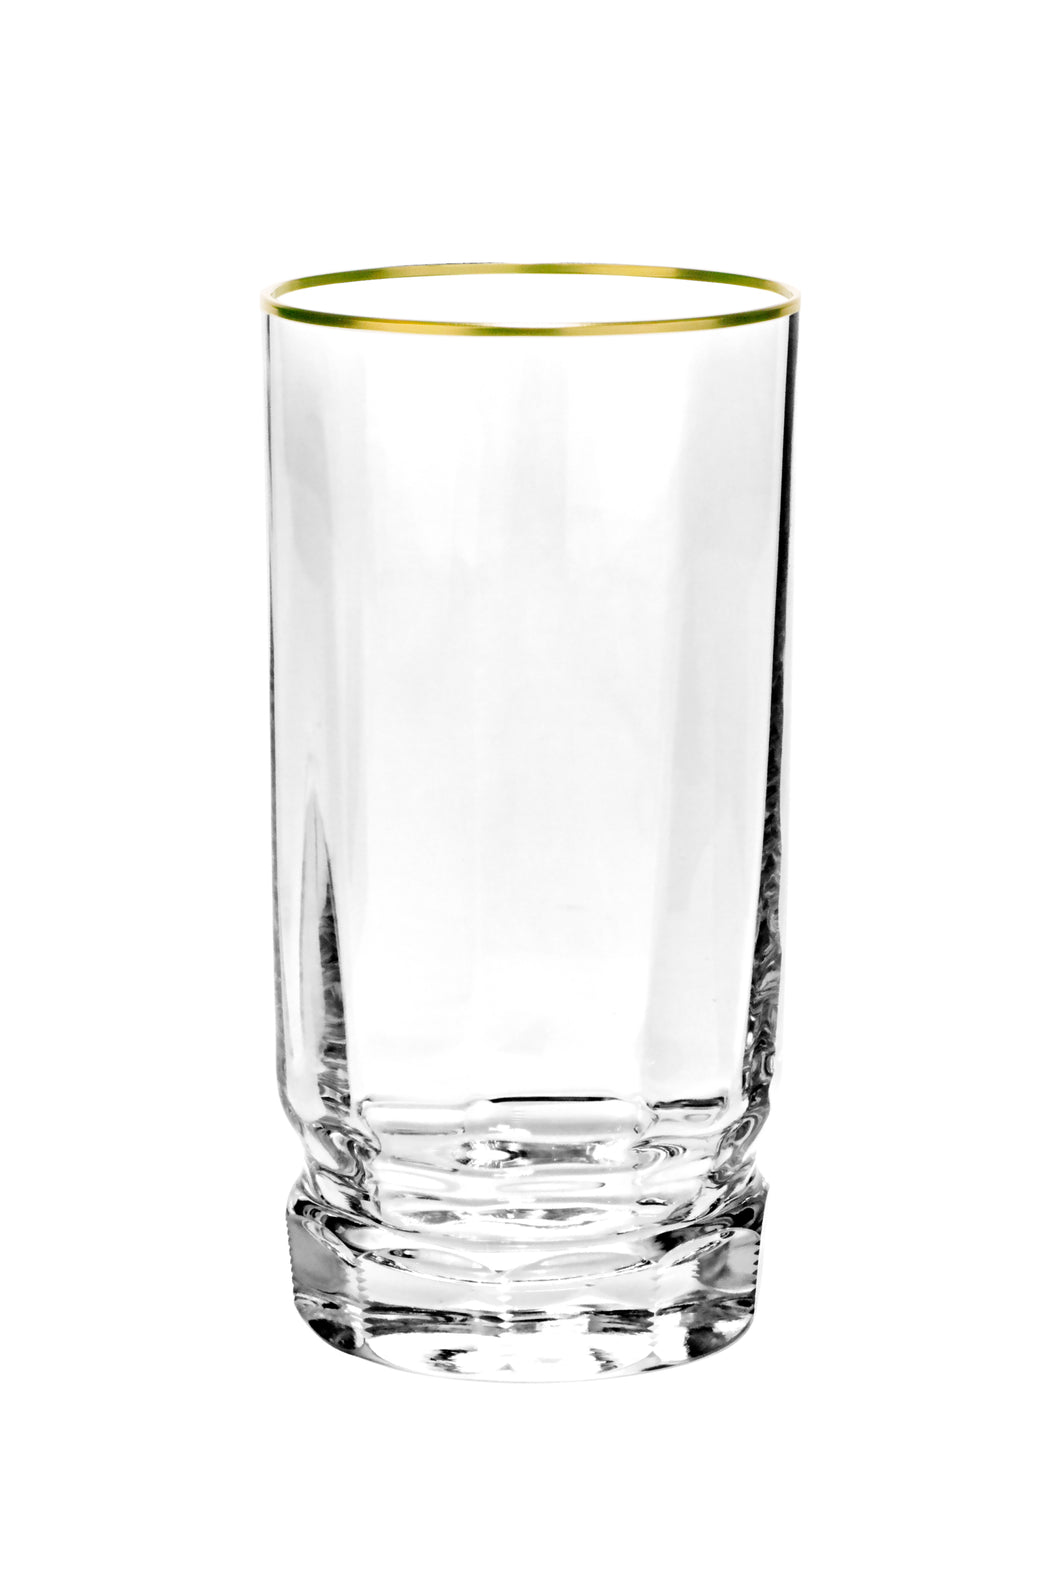 DELPHI Becher 140 mm - klares Glas, Flächenschliff, Eckenschliff, Goldrand